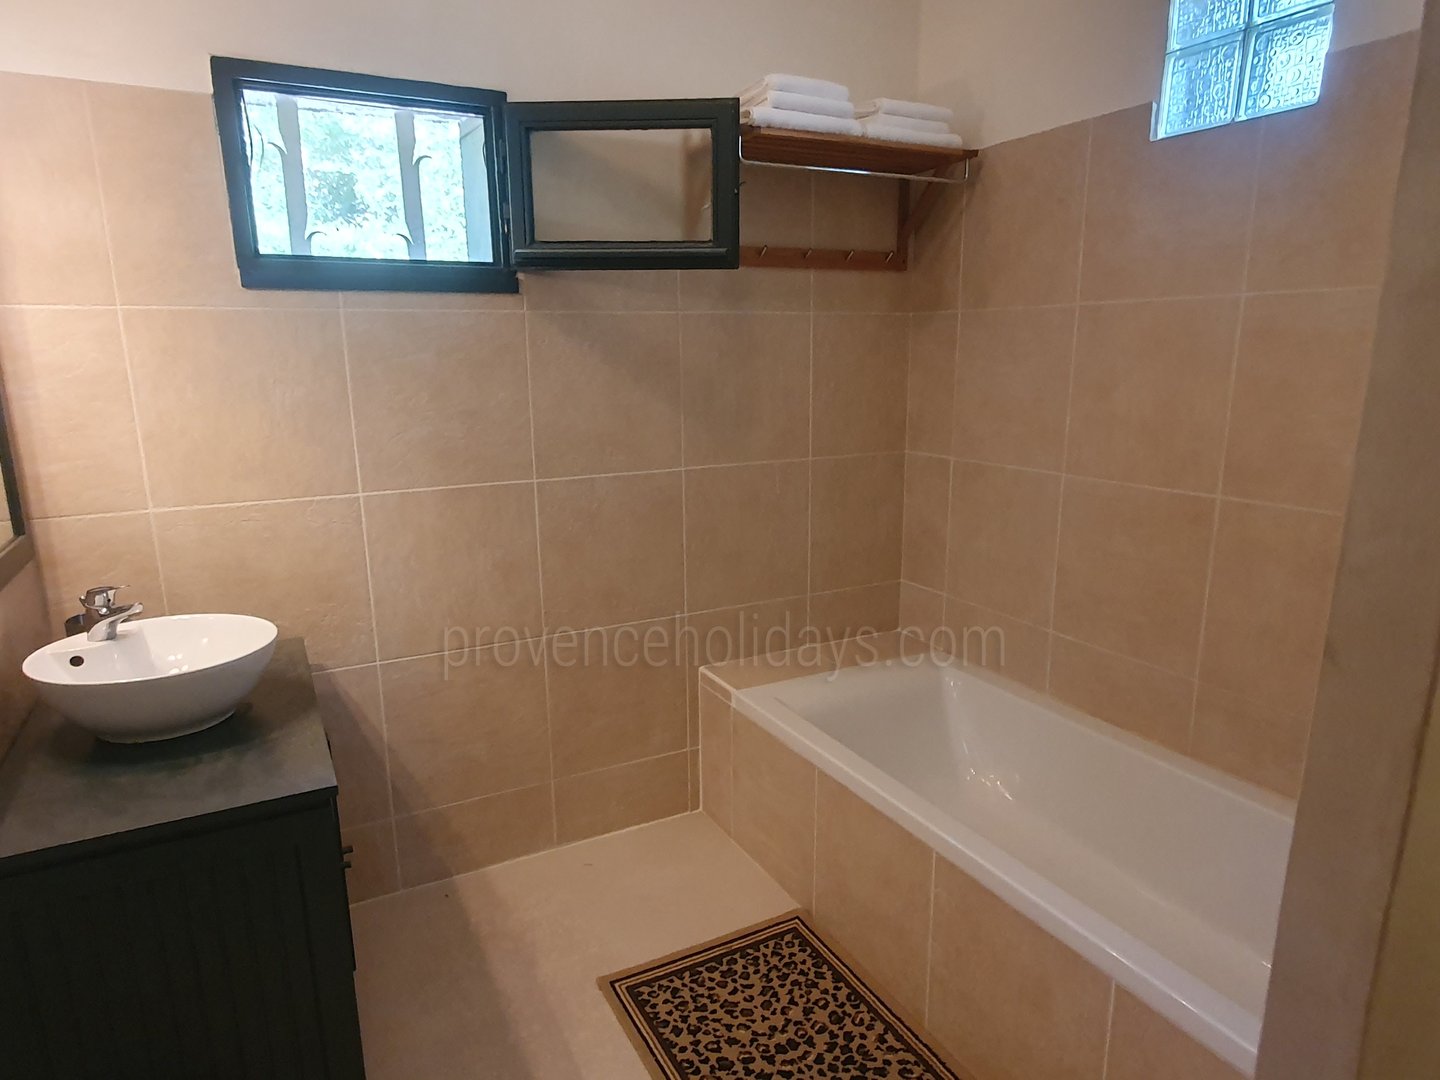 14 - Villa Fabre: Villa: Bathroom